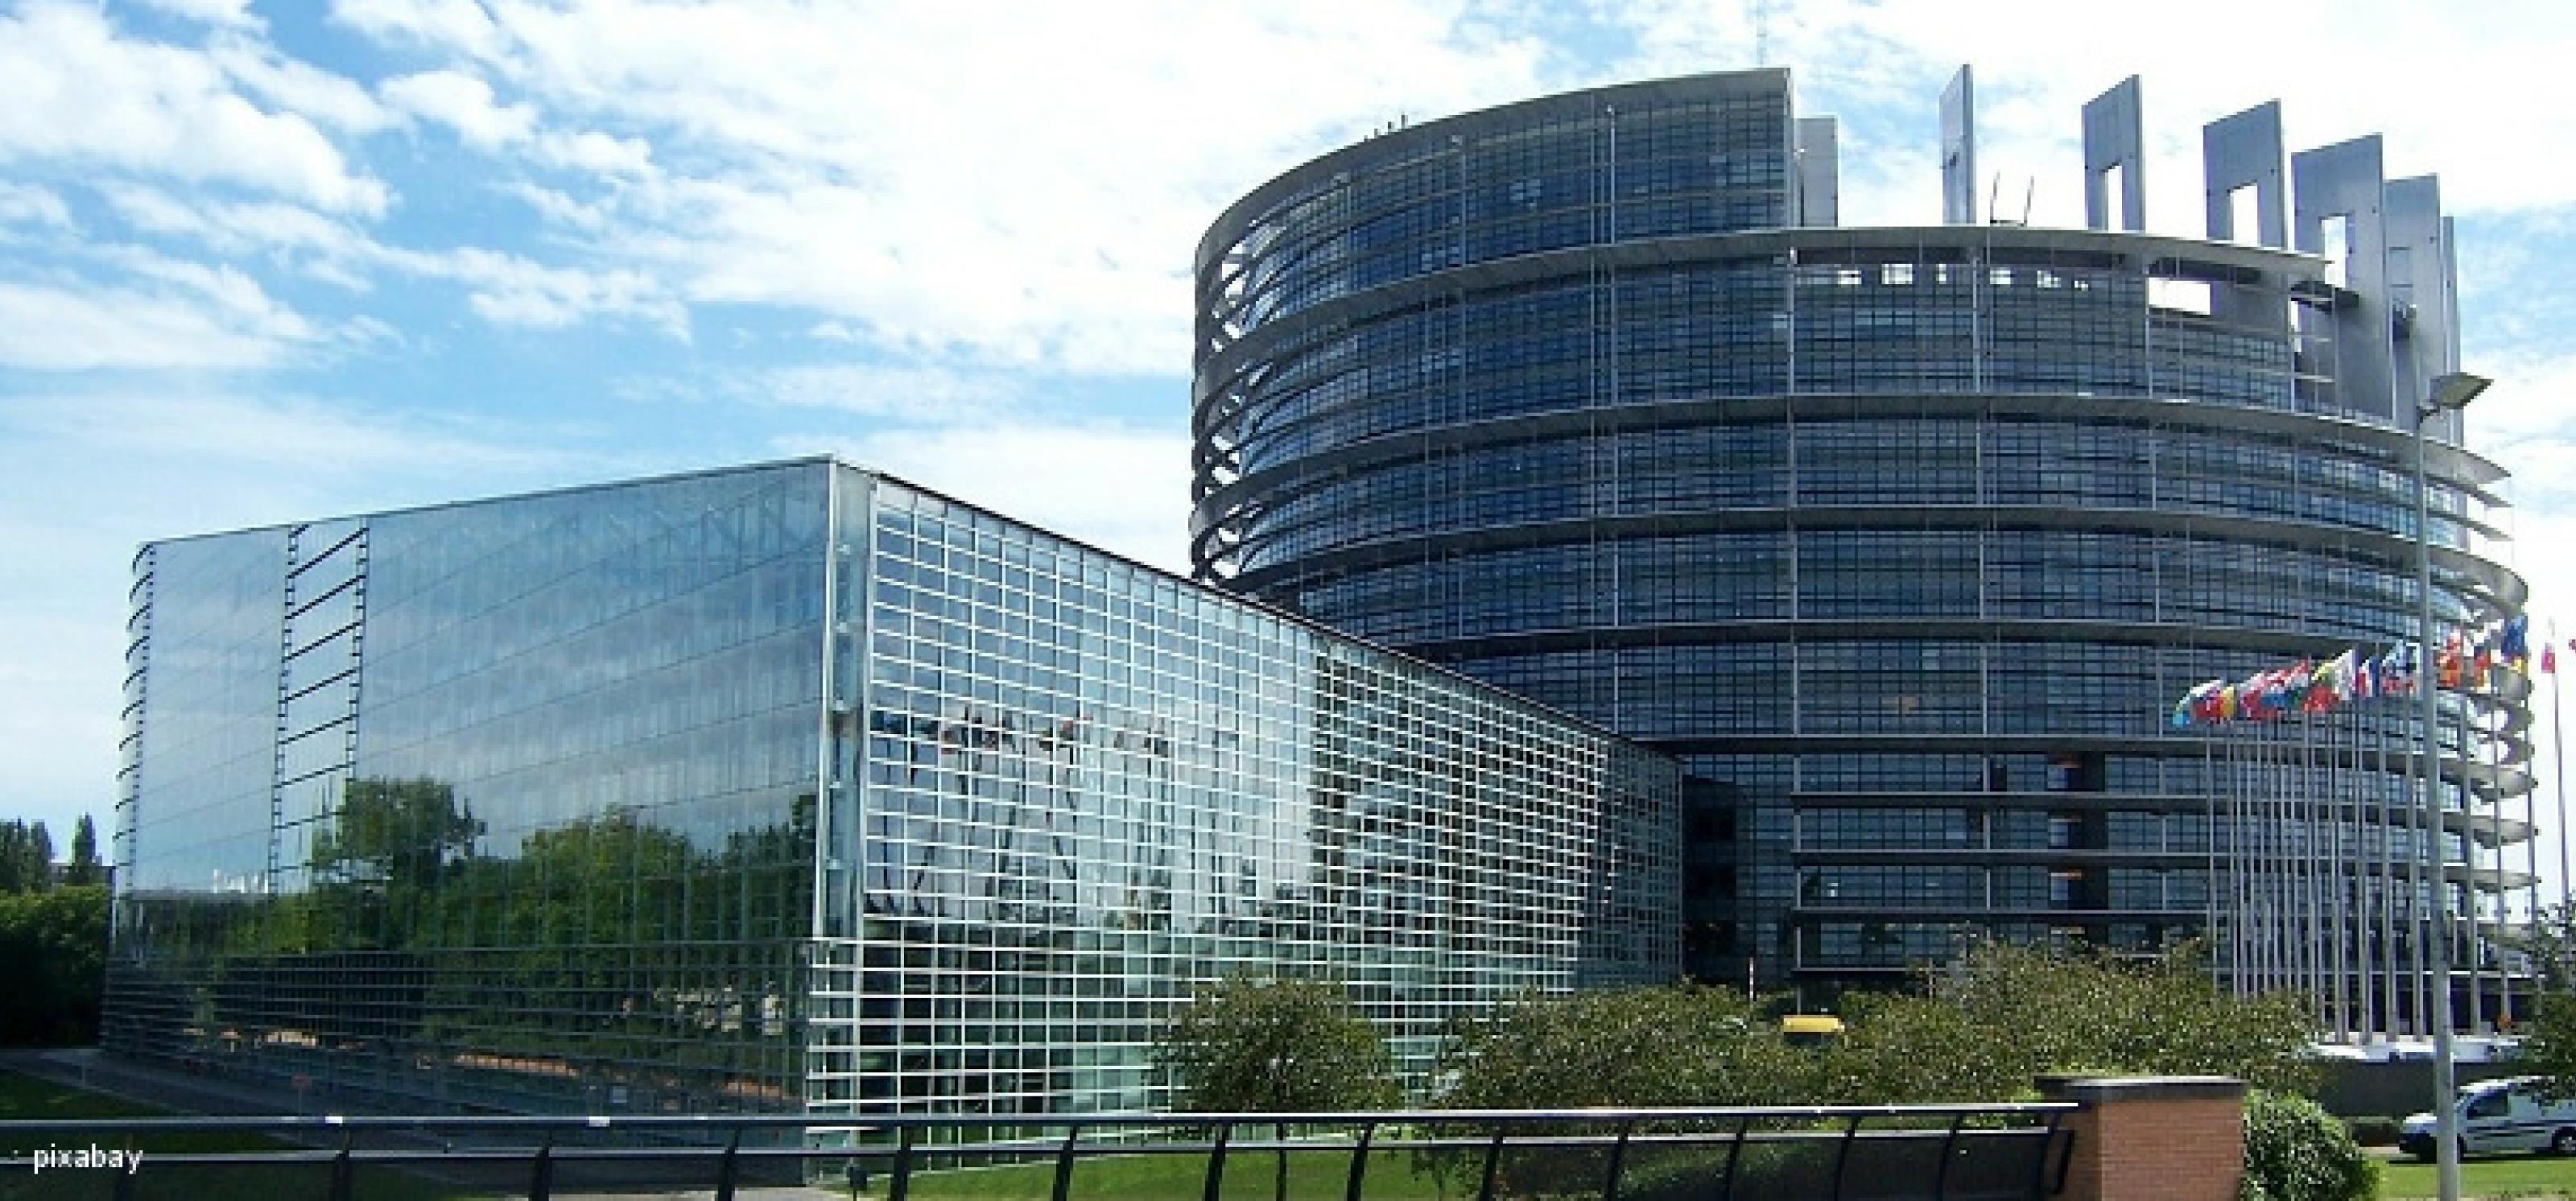 Parlamentsgebäude der EU in Straßburg: ein zylinderförmiges und ein rechteckiges Gebäude mit Glasfassaden